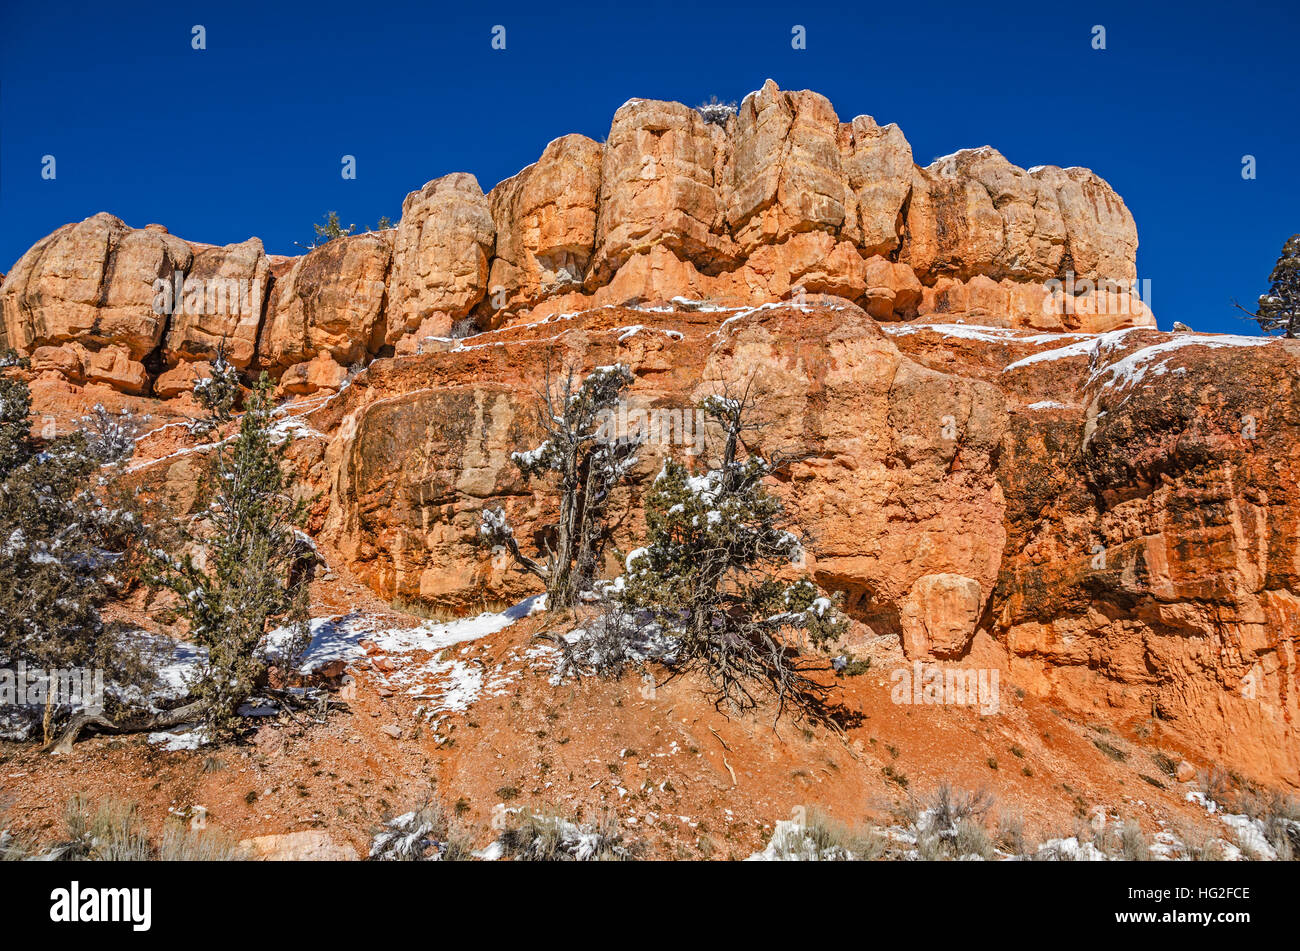 Ciel bleu de l'Utah met en évidence une formation de roche orange le long de la mile Scenic Byway 12 124 y compris les parcs nationaux et d'état et un monument national. Banque D'Images